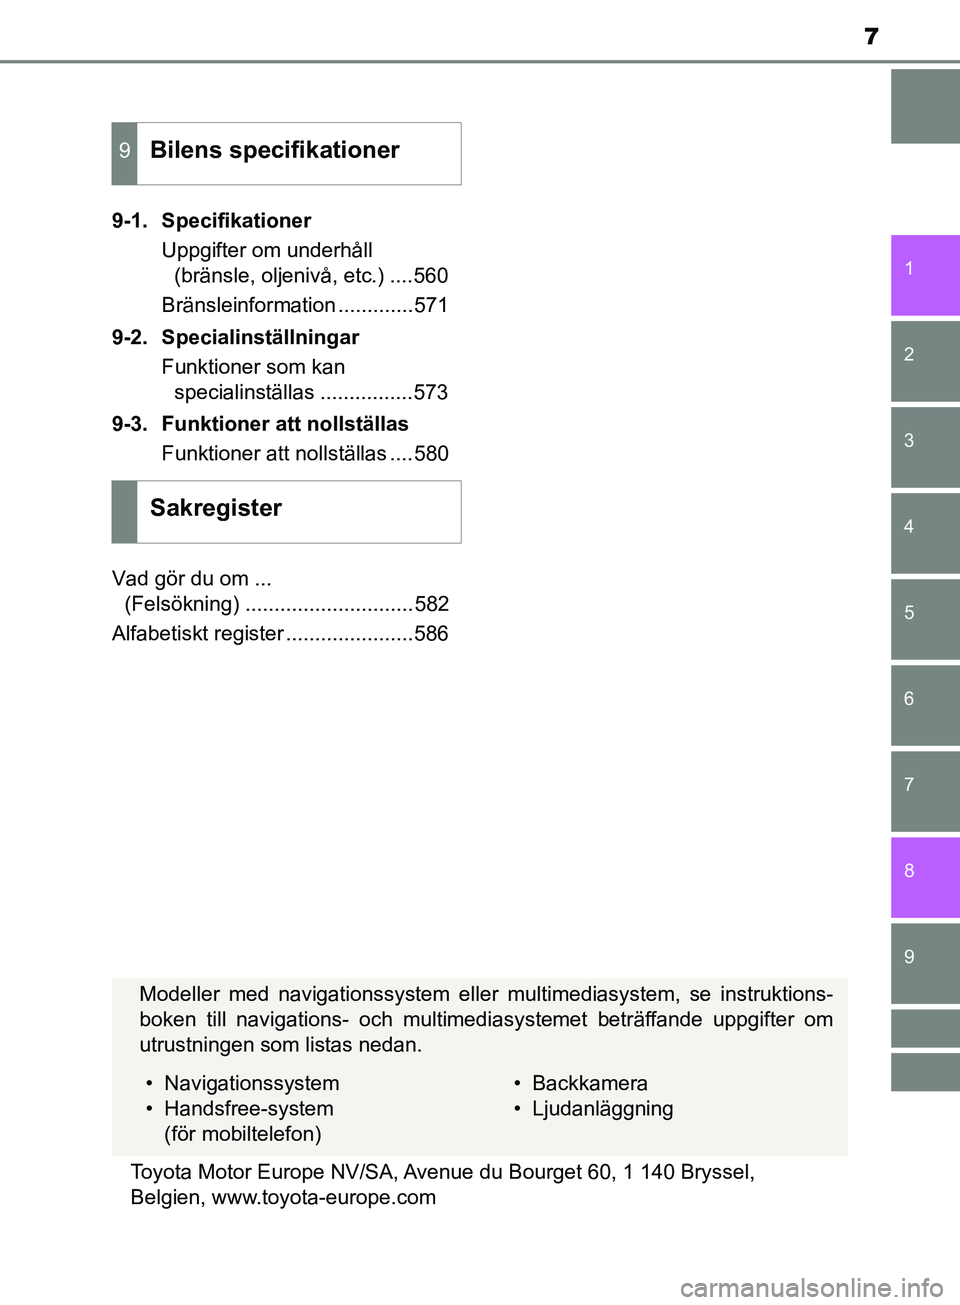 TOYOTA YARIS 2019  Bruksanvisningar (in Swedish) 7
1
7
8 6 5
4
3
2
9
YARIS_HV_OM_Europe_OM52K29SE9-1. Specifikationer
Uppgifter om underhåll (bränsle, oljenivå, etc.) ....560
Bränsleinformation .............571
9-2. Specialinställningar Funktio